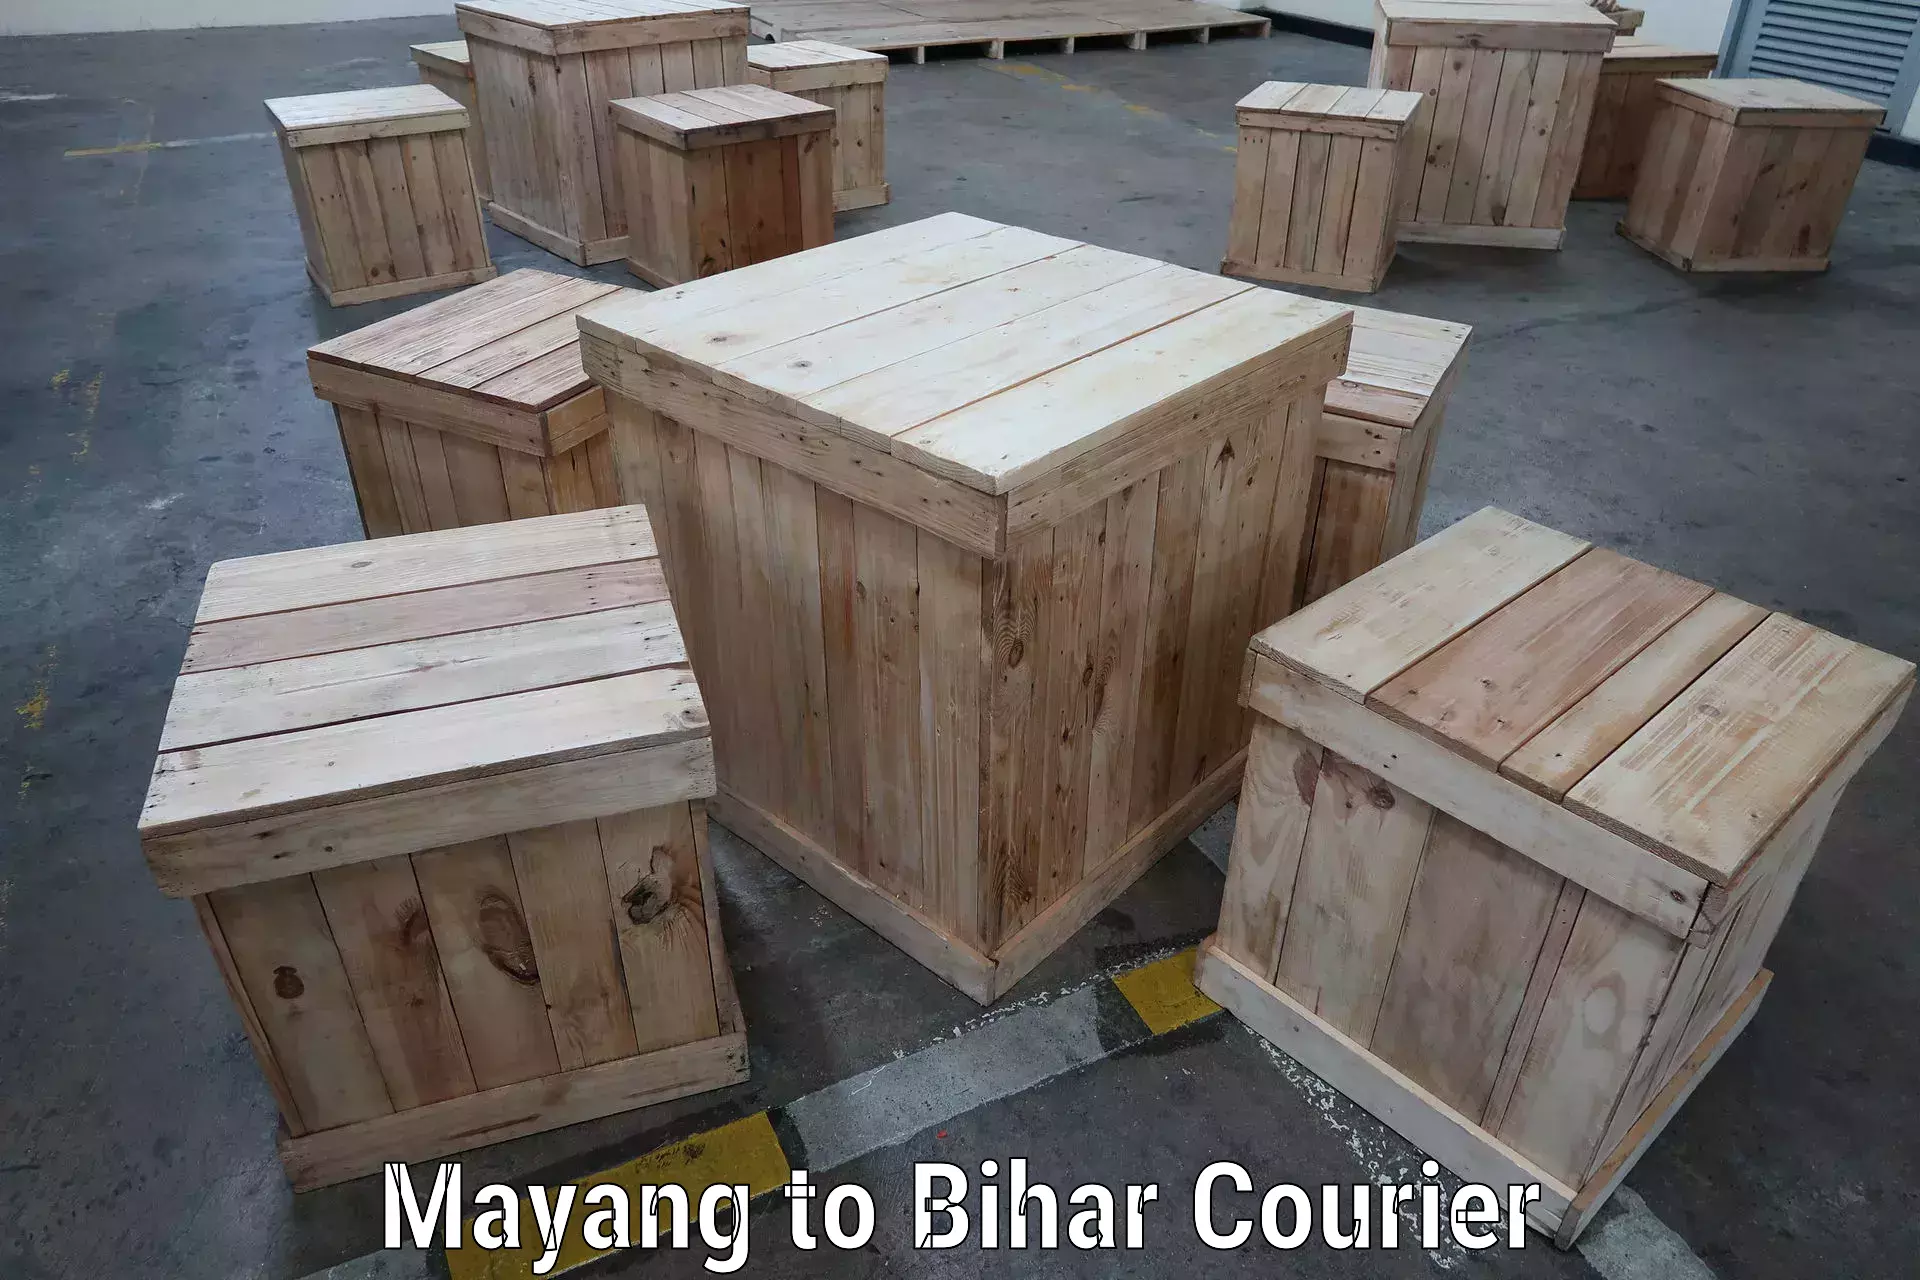 International logistics solutions Mayang to Malyabag